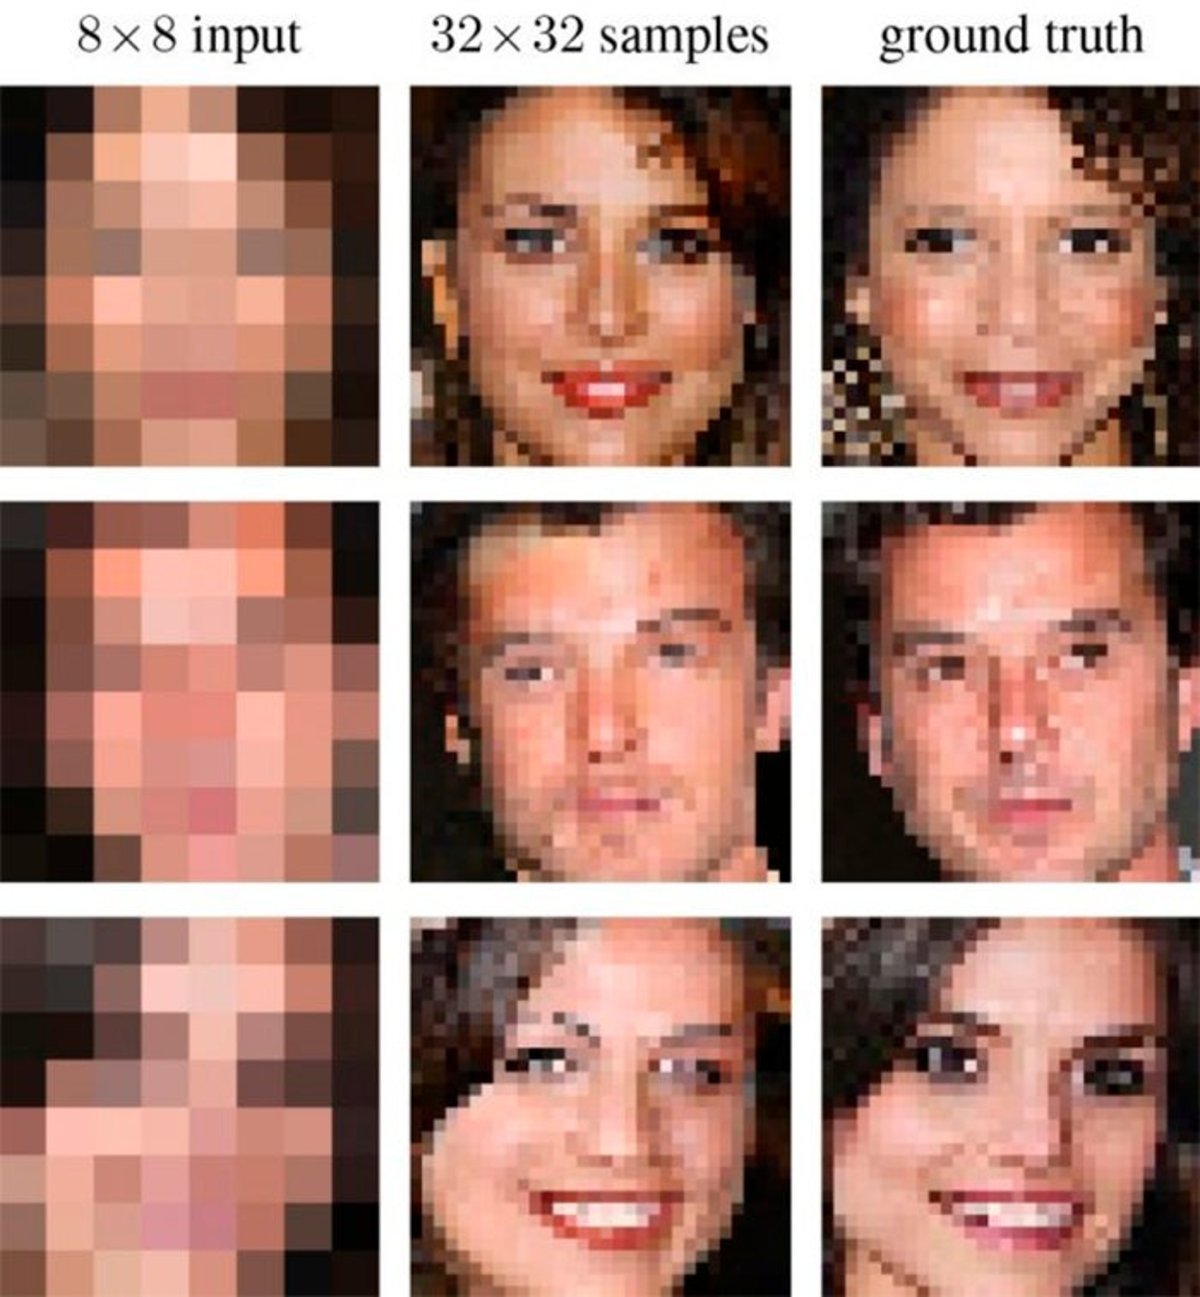 IA de Google que reconstruye imágenes pixeladas